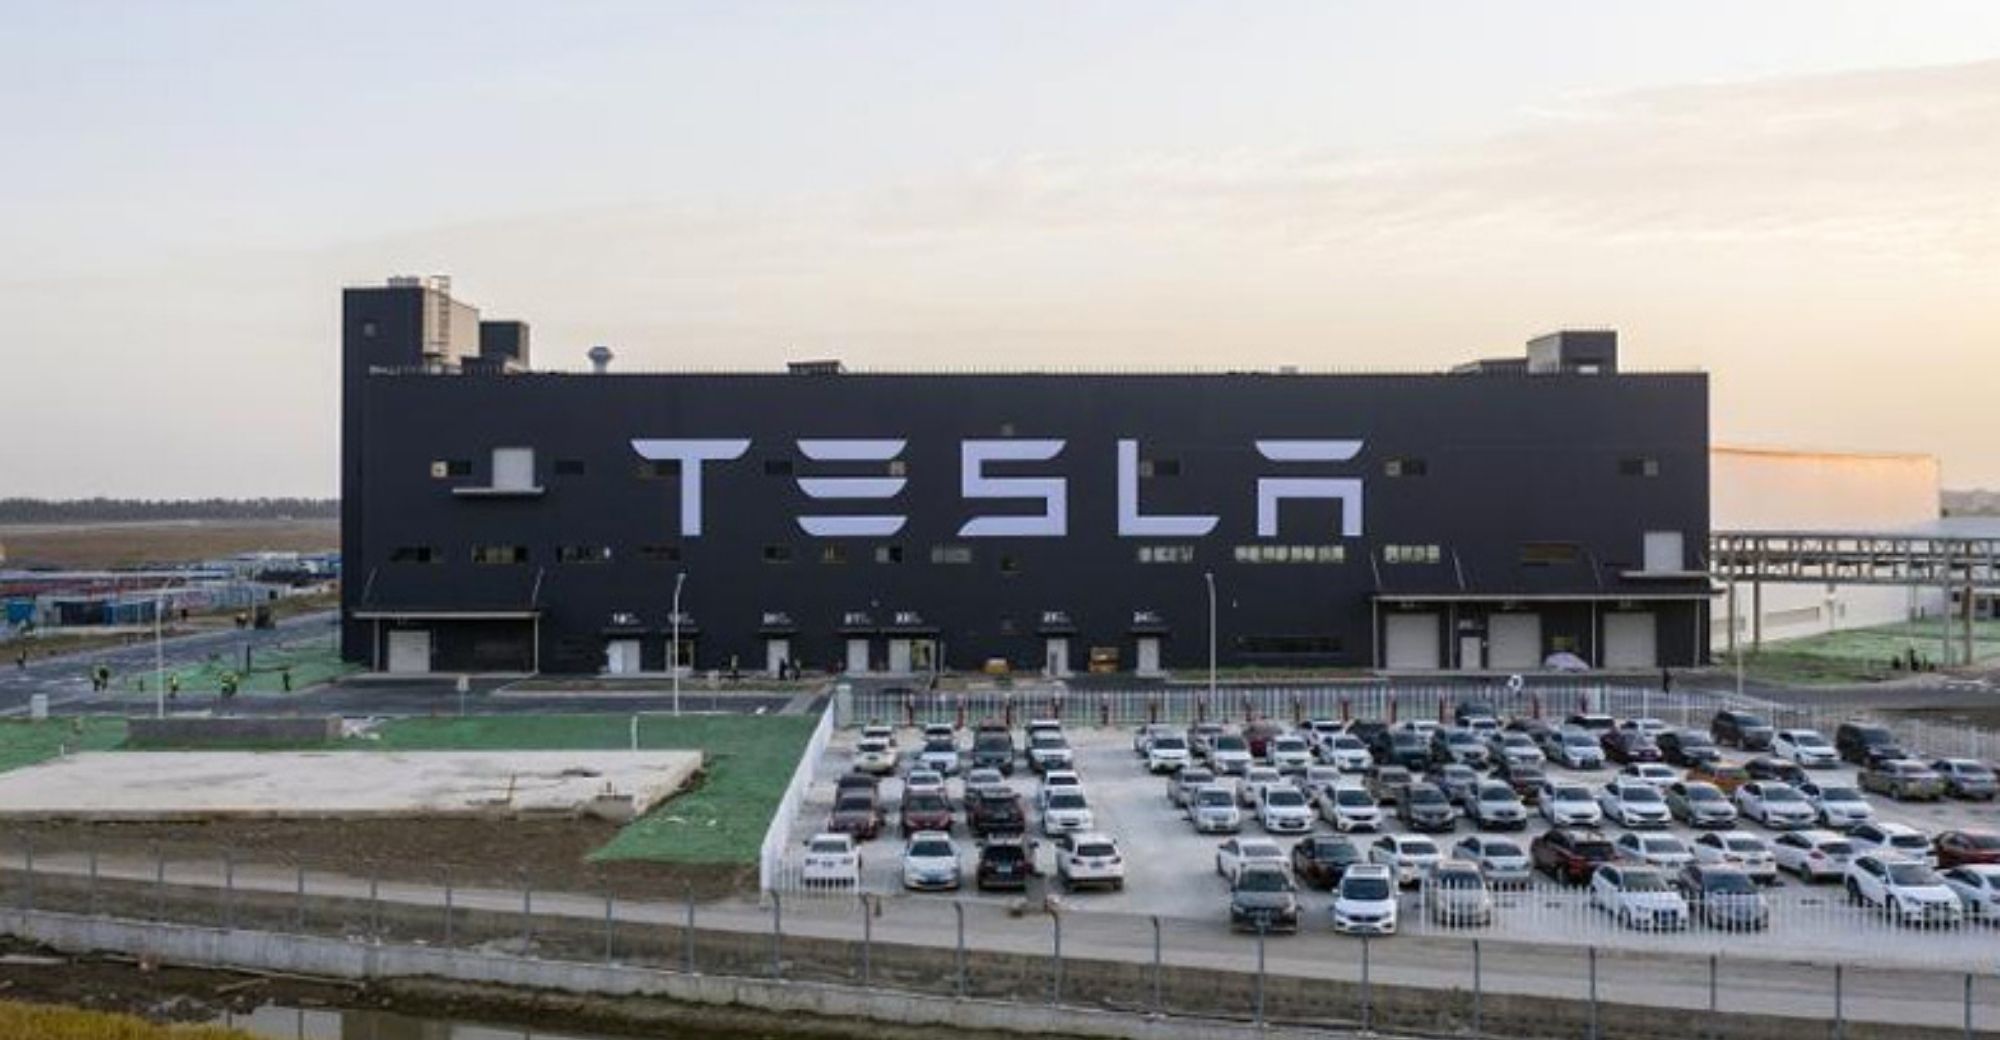 Tesla ขยายโรงงานขนาดใหญ่ในเซี่ยงไฮ้เพื่อเพิ่มกำลังการส่งออก